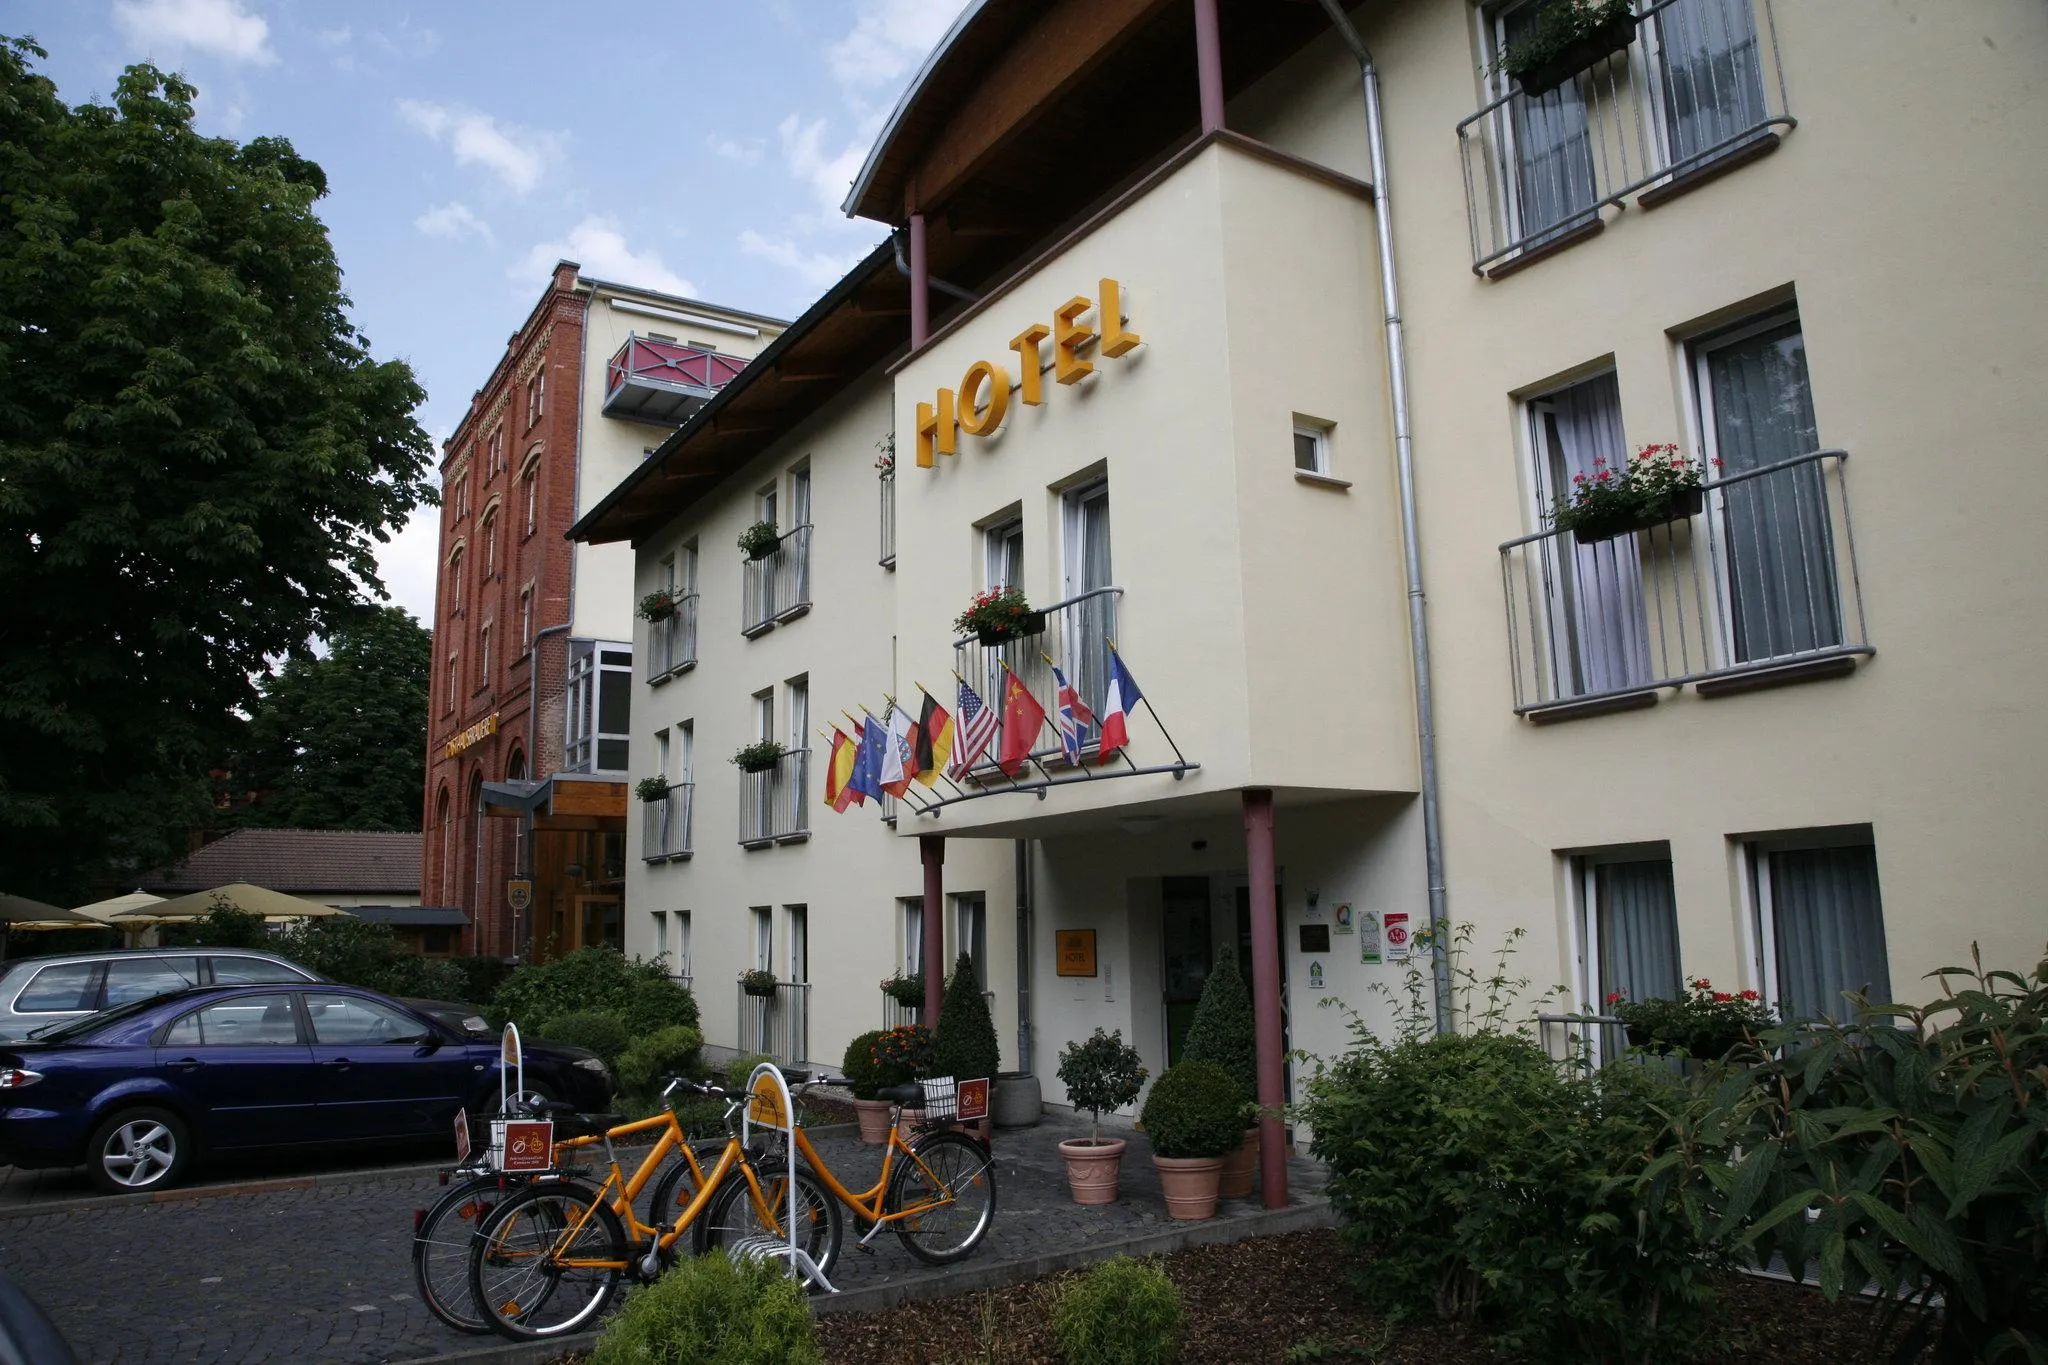 Building hotel Hotelpark Stadtbrauerei Arnstadt